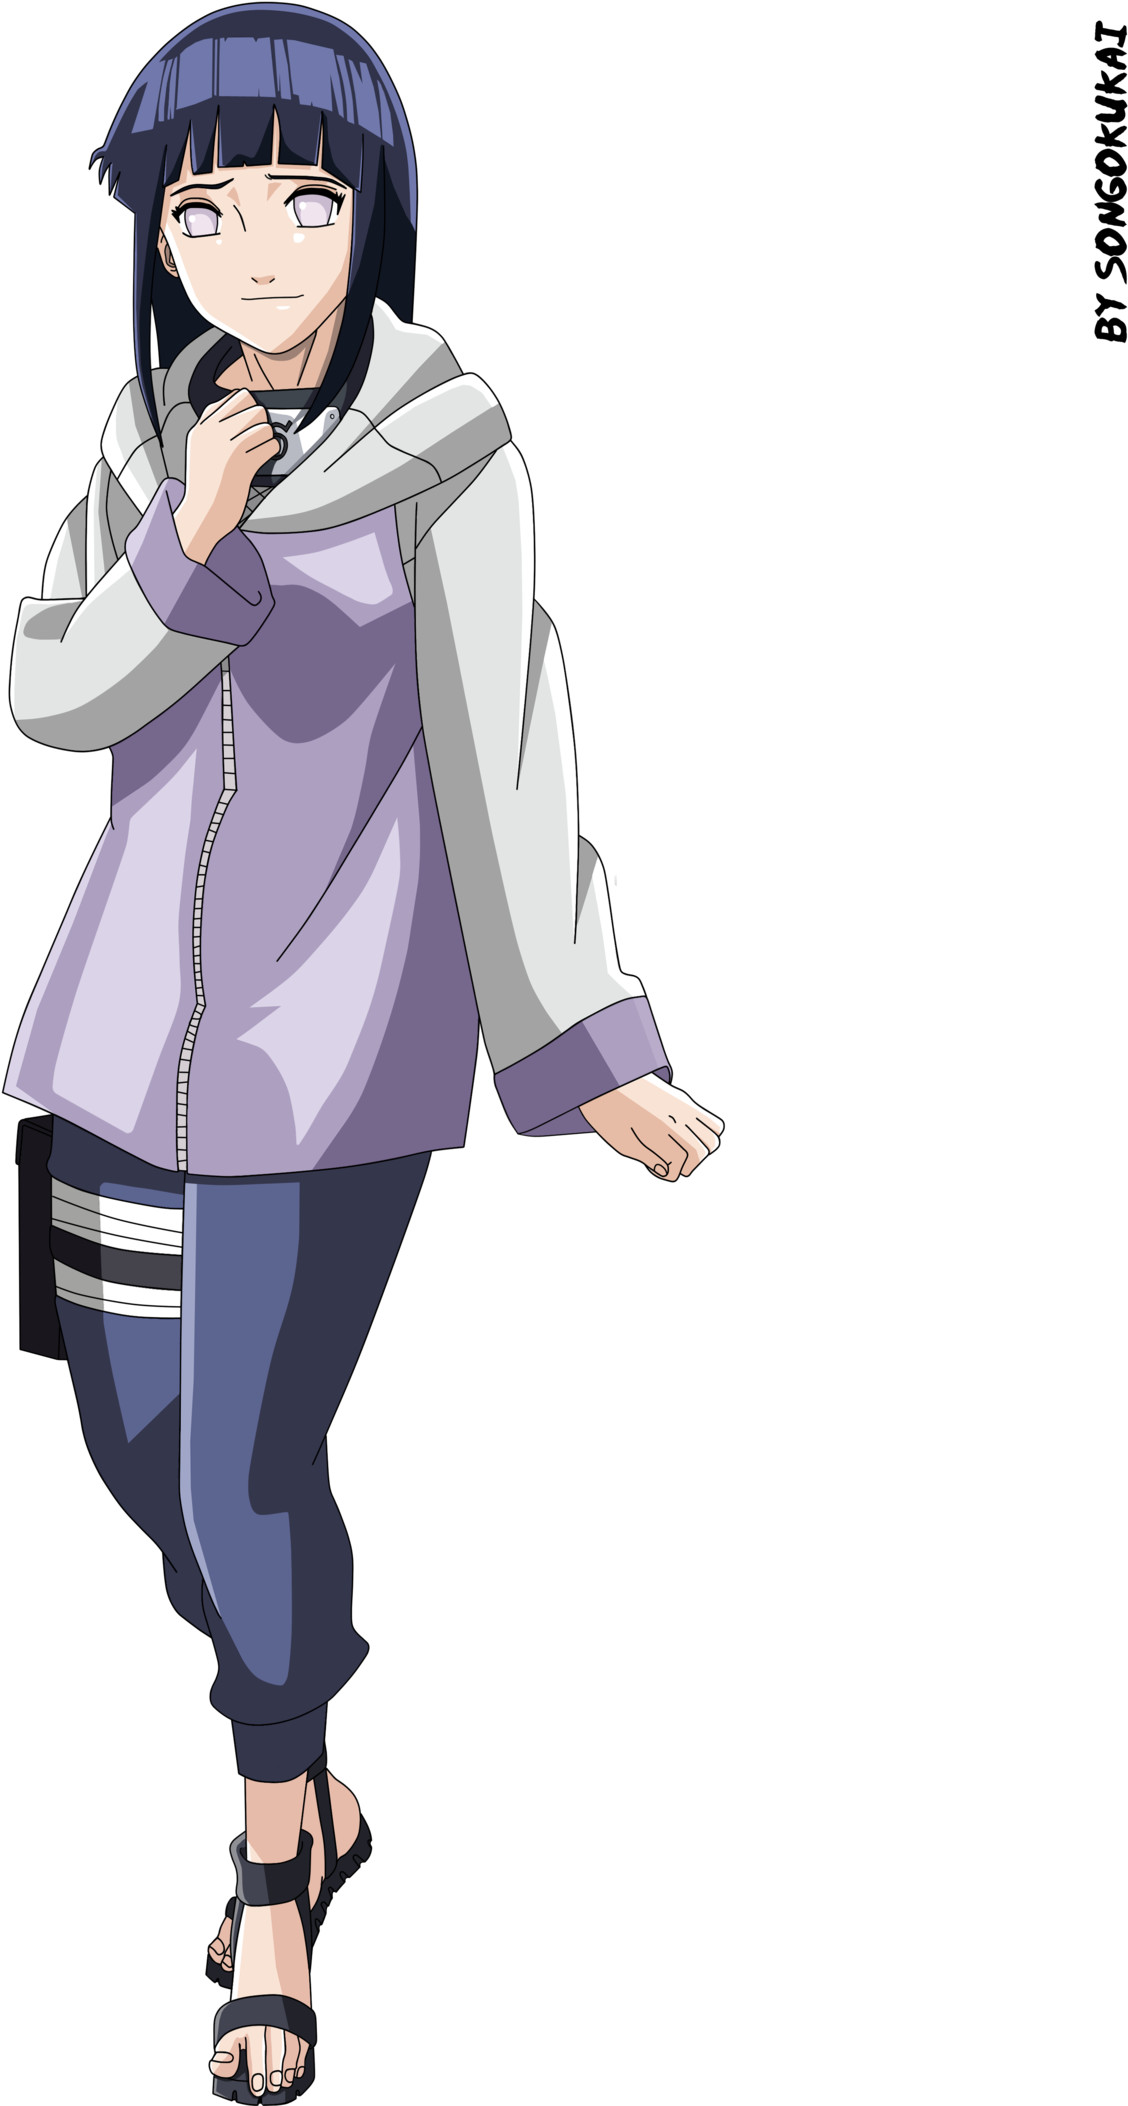 1128x2106 Animated Girls Images Hinata Image Hd Wallpaper And - Naruto Shippuden Hinata  Hyuga Cosplay Costume (